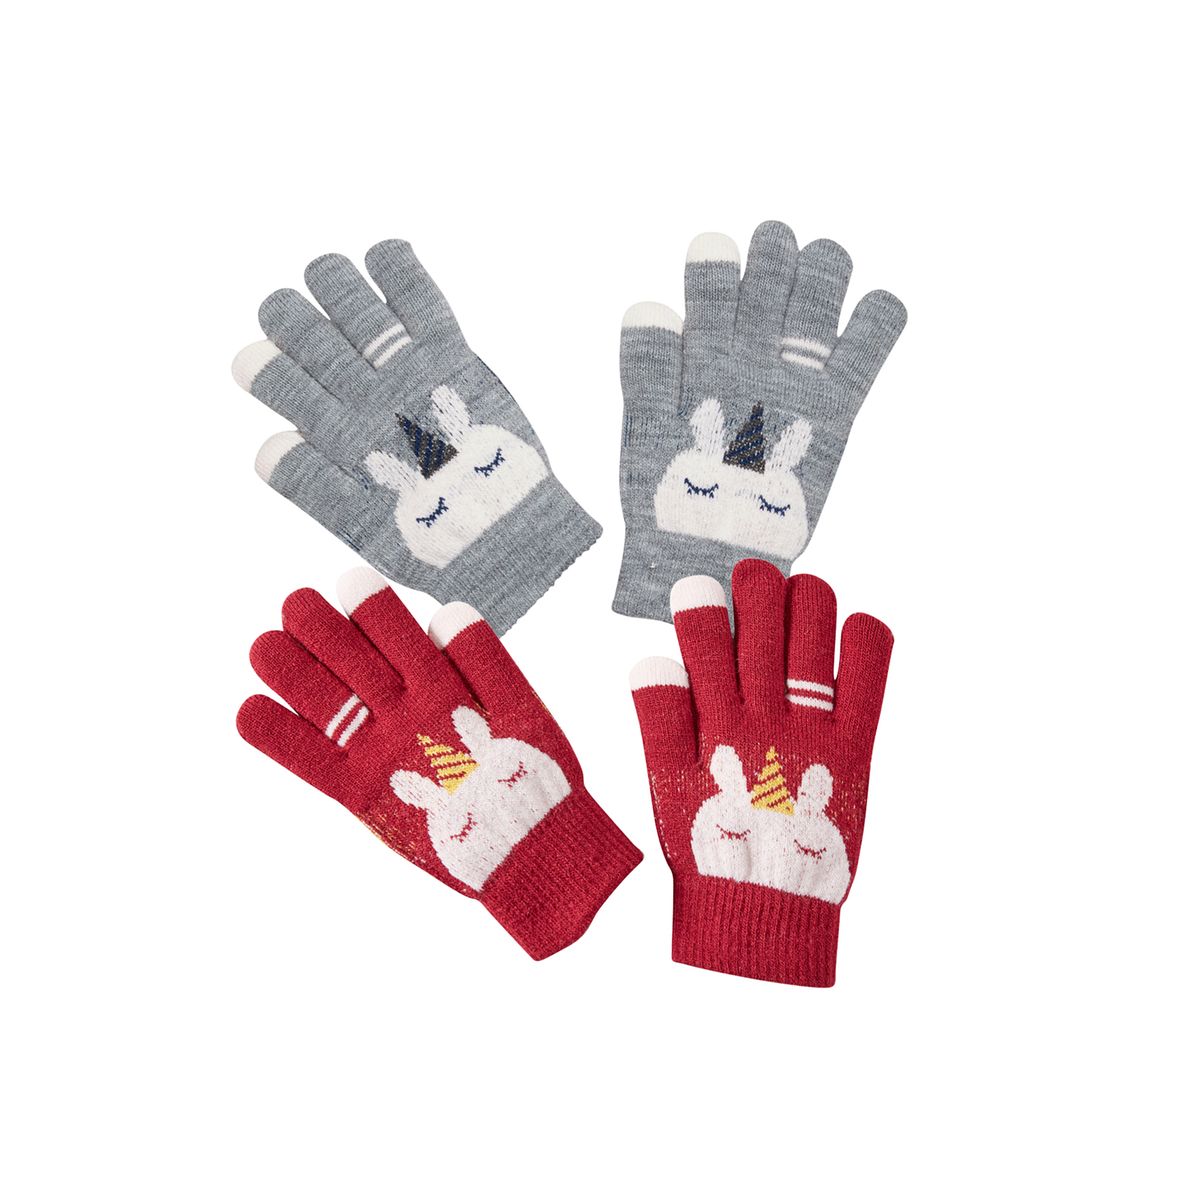 Cooraby Lot de 2 paires de gants dhiver chauds en polaire pour enfant 